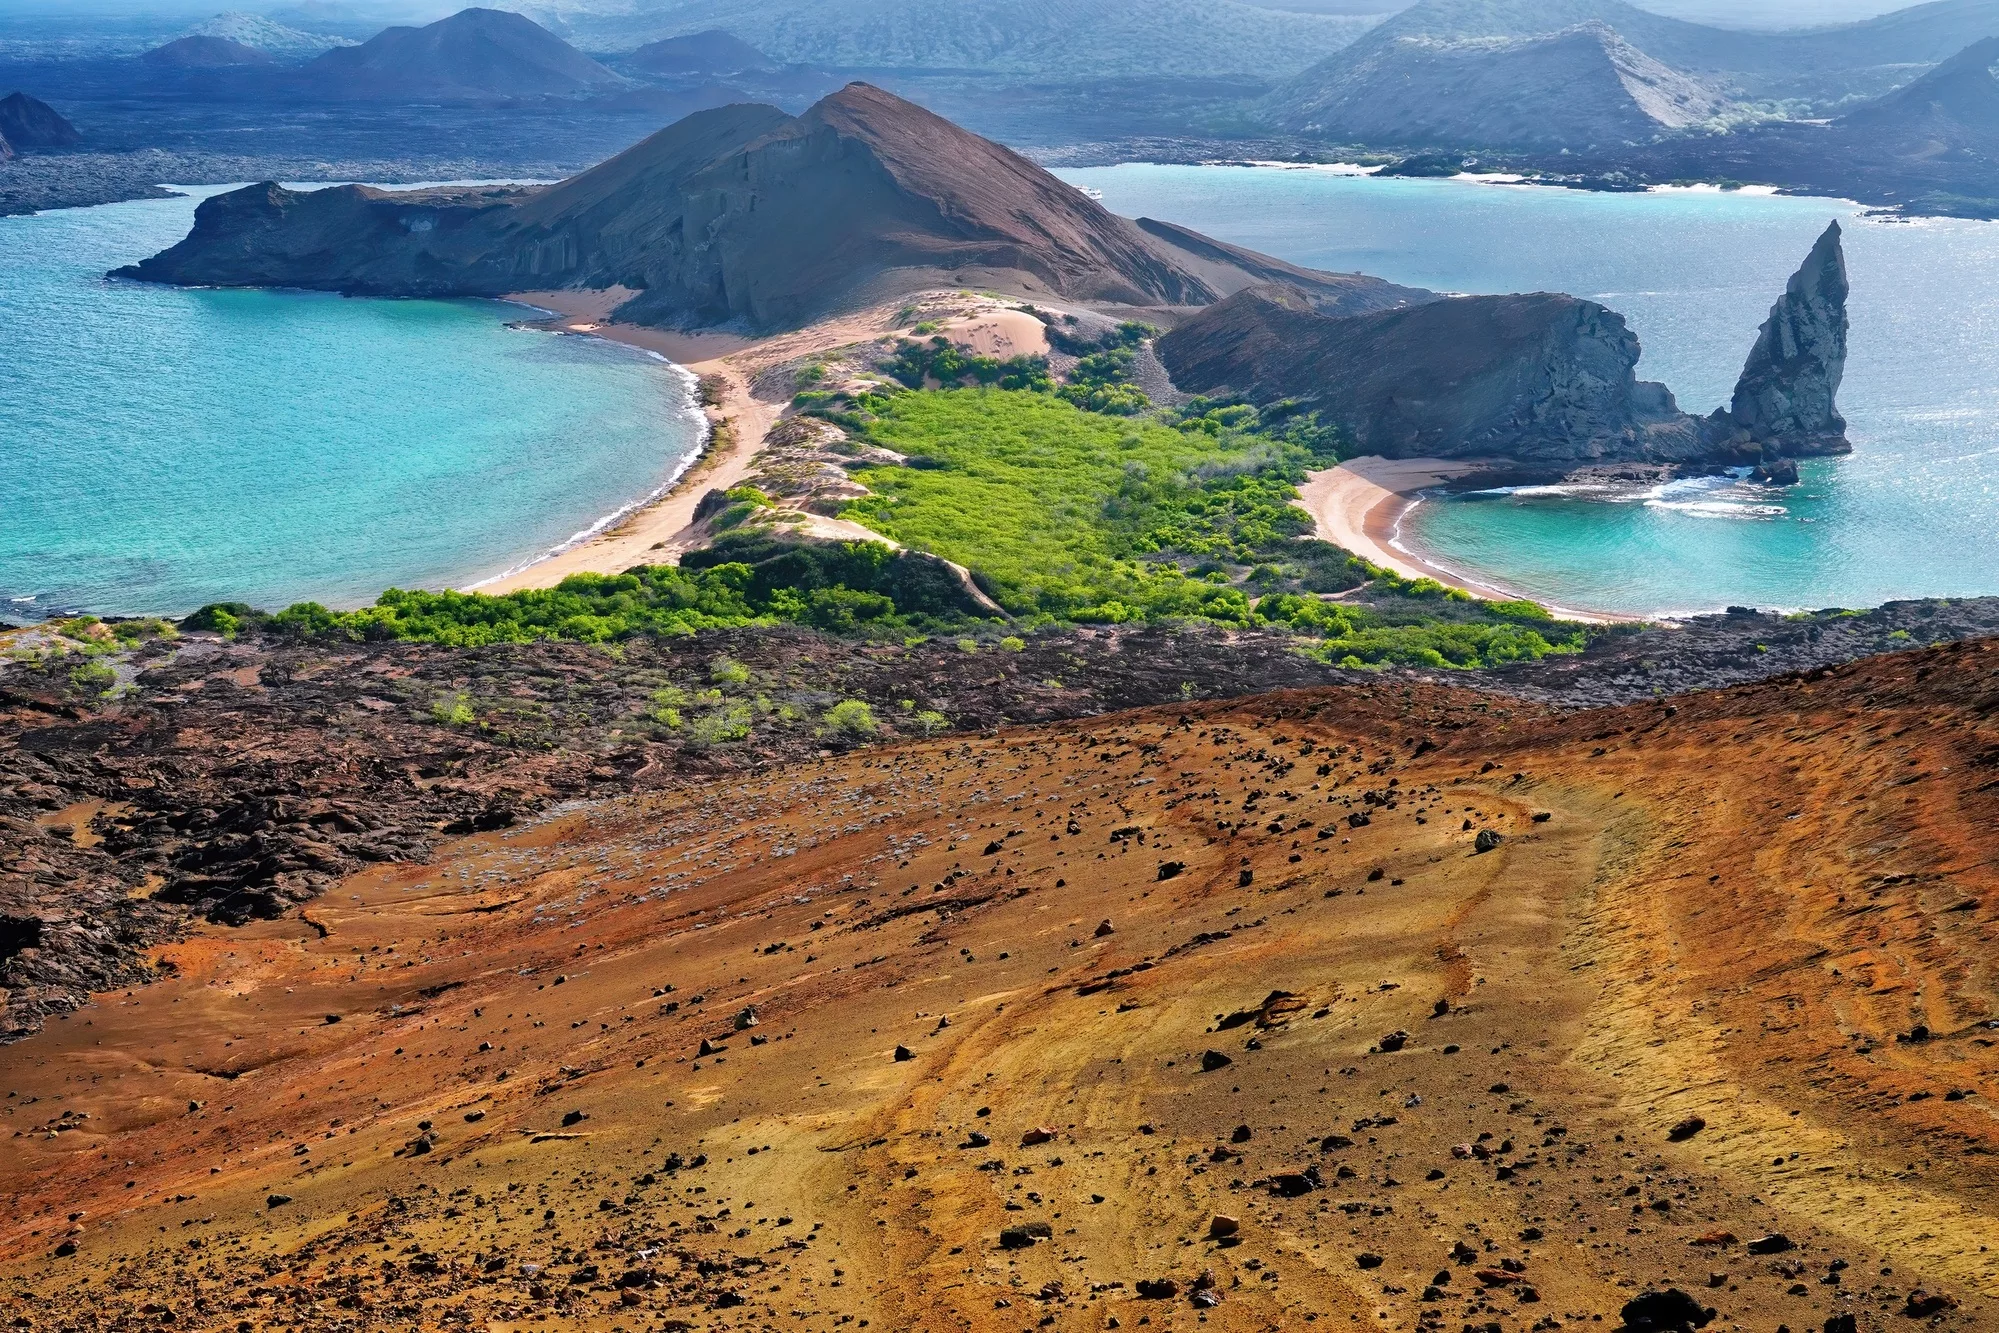 Galapagos Islands Yacht-Based Tour Photography Experience - Bartholomew point